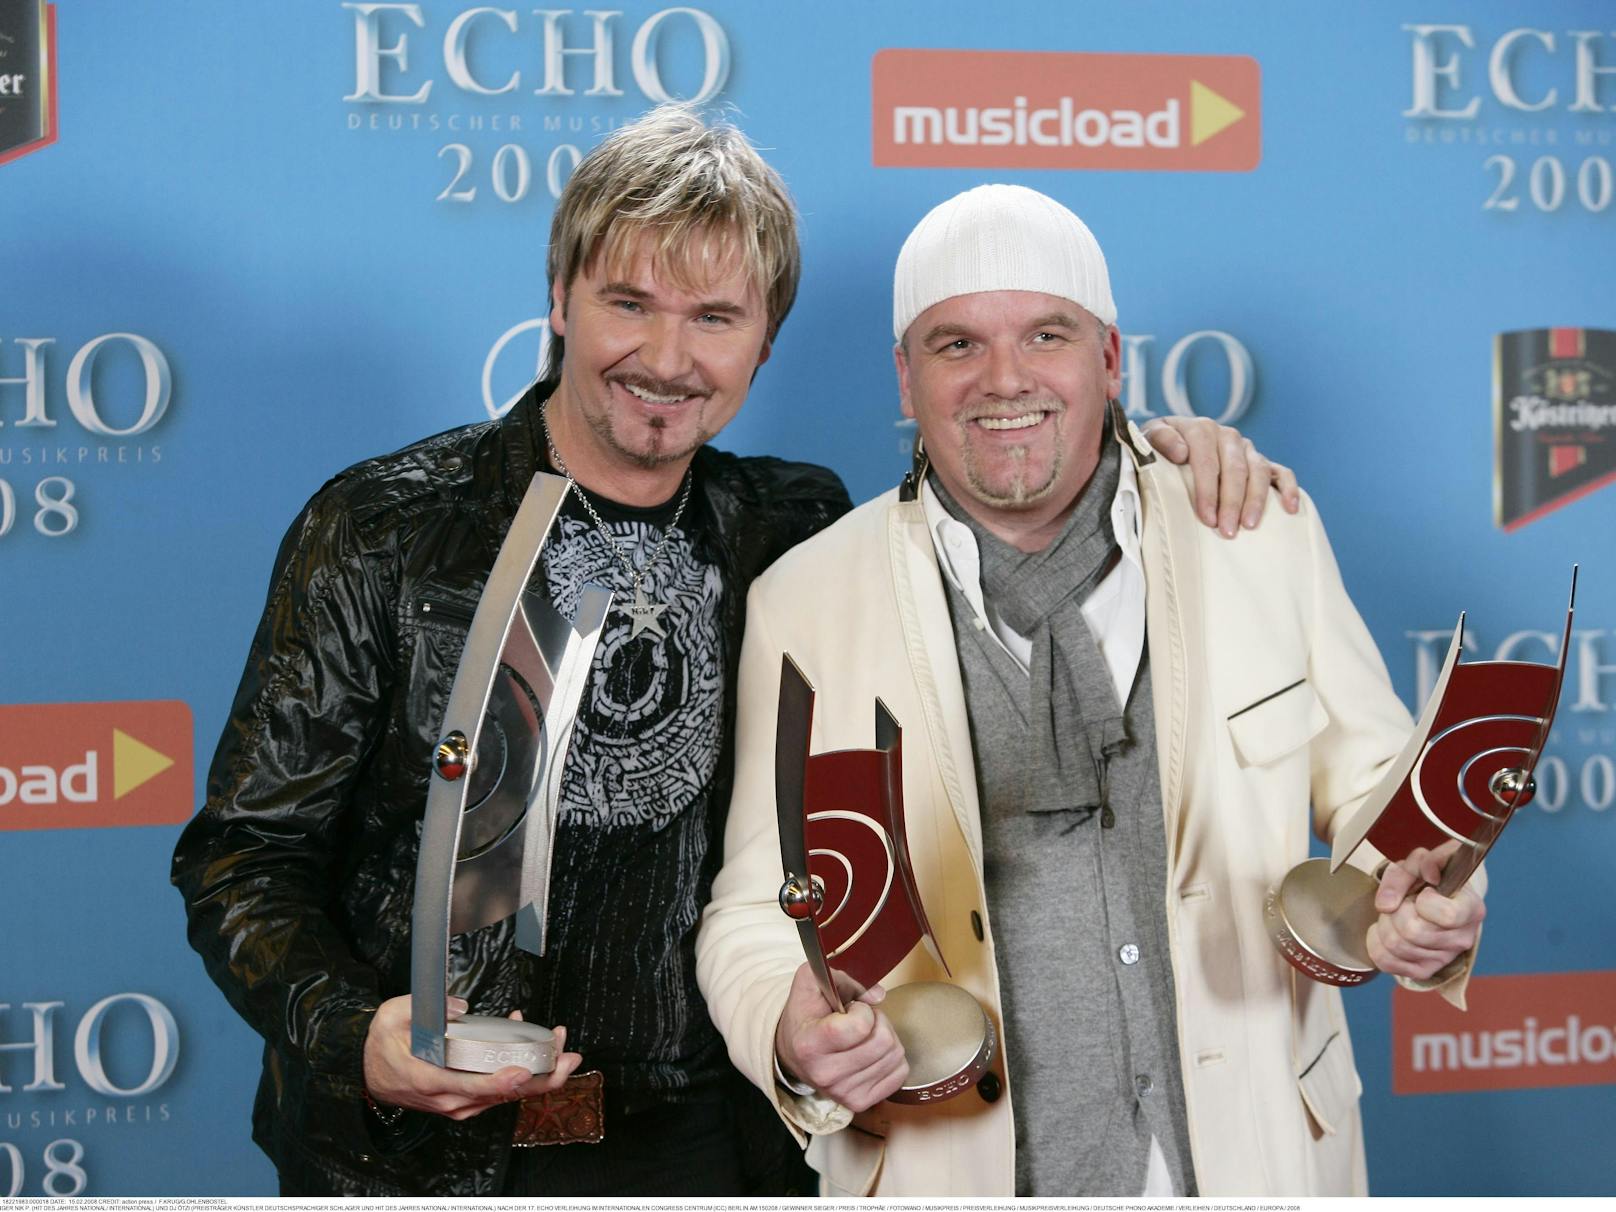 Mit "Ein Stern" räumen Gerry und Nik P. beim deutschen Musikpreis, dem Echo 2008, groß ab: "Hit des Jahres"!